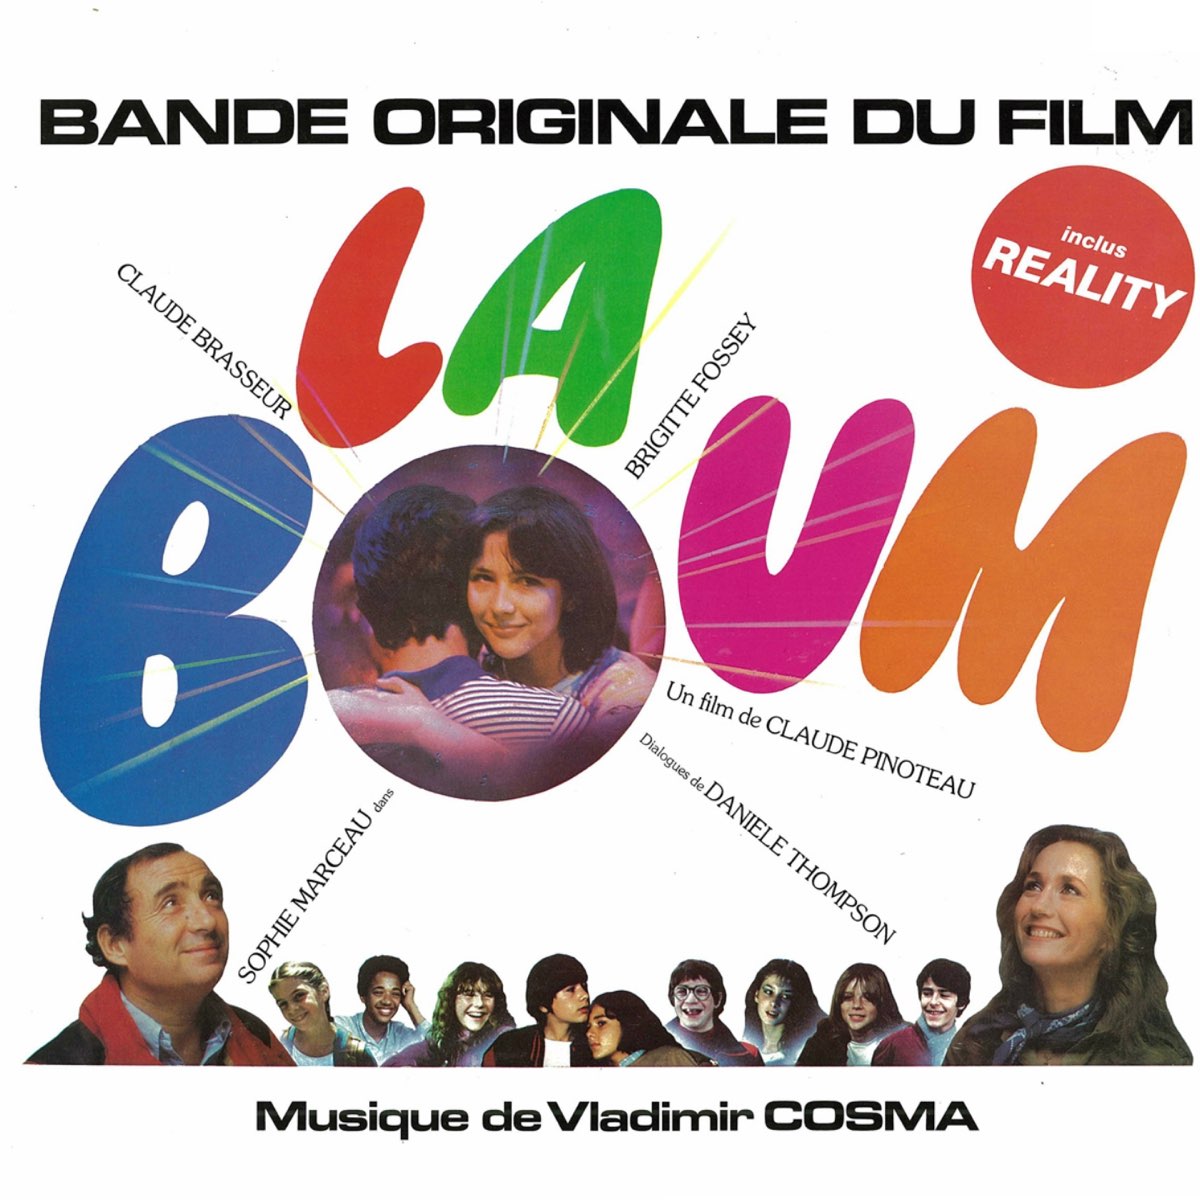 Il tempo delle mele (Claude Pinoteau's Original Motion Picture Soundtrack)  - Album di Vladimir Cosma - Apple Music